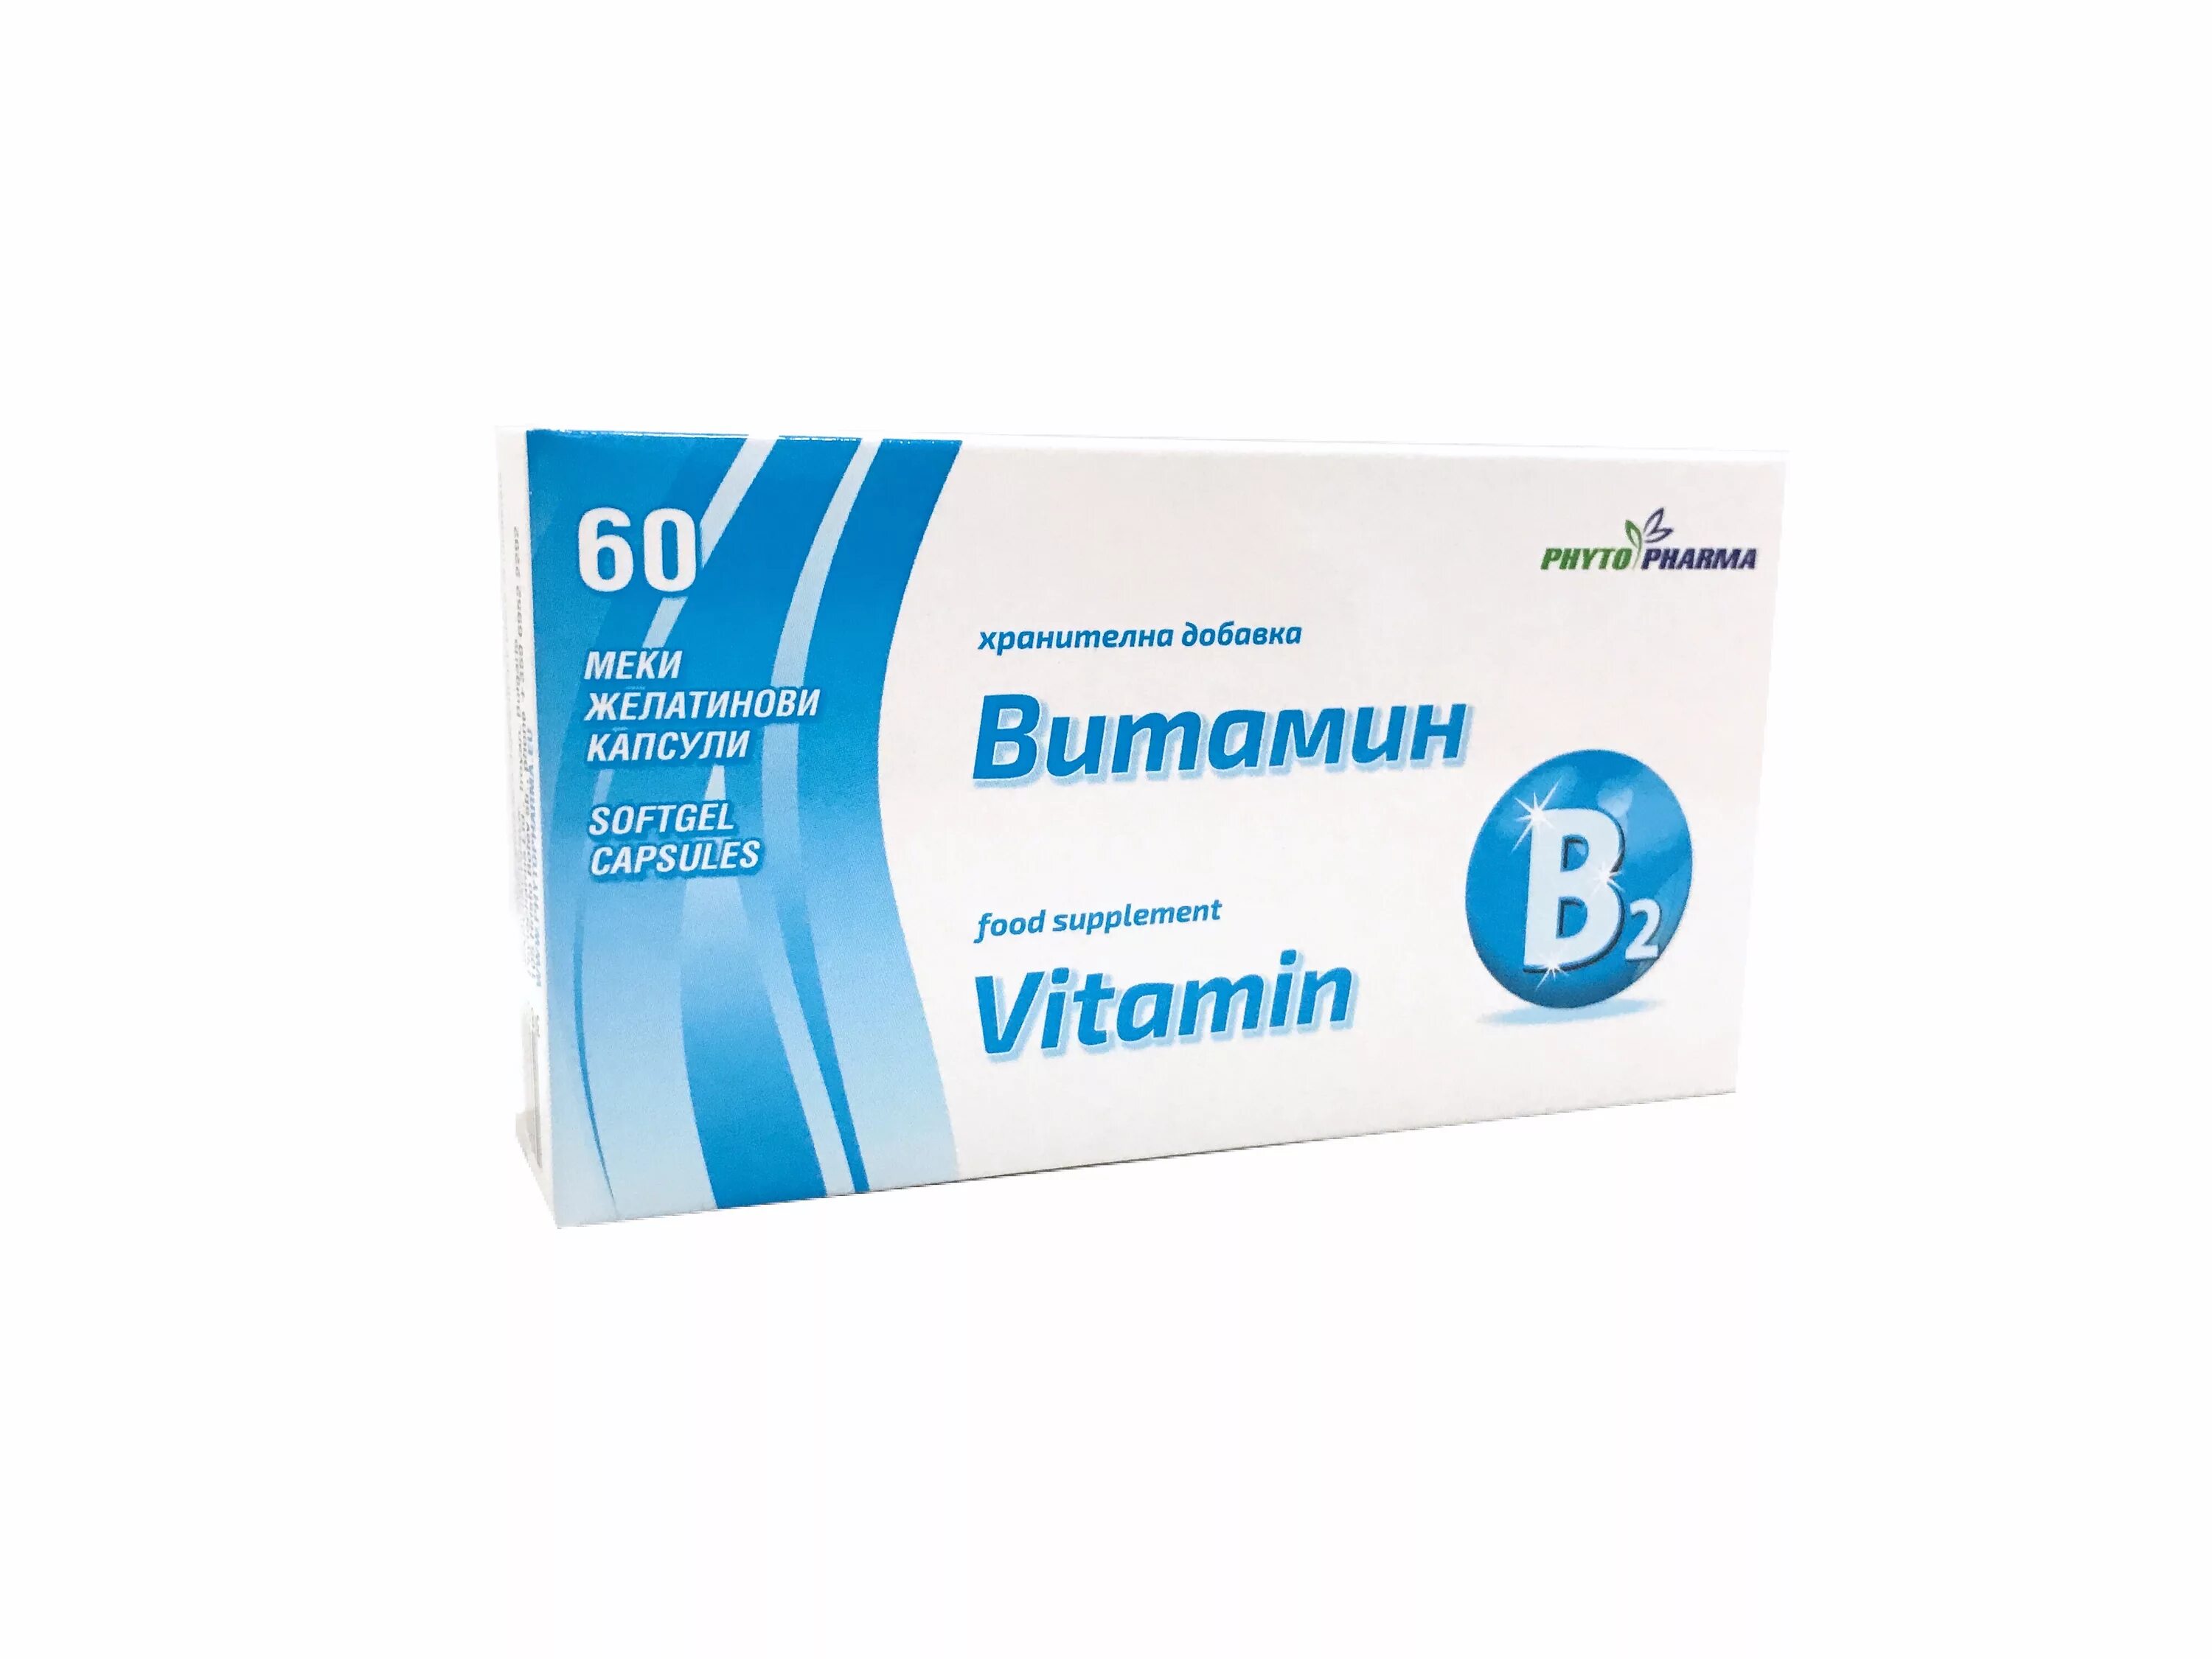 Витамин в 1 2 купить. Витамин б12 цианокобаламин в таблетках. Витамин б1 б2 б6 б12 в таблетках. Витамин б1 тиамин в таблетках. Комплекс витамины в 1 6 12 в таблетках.